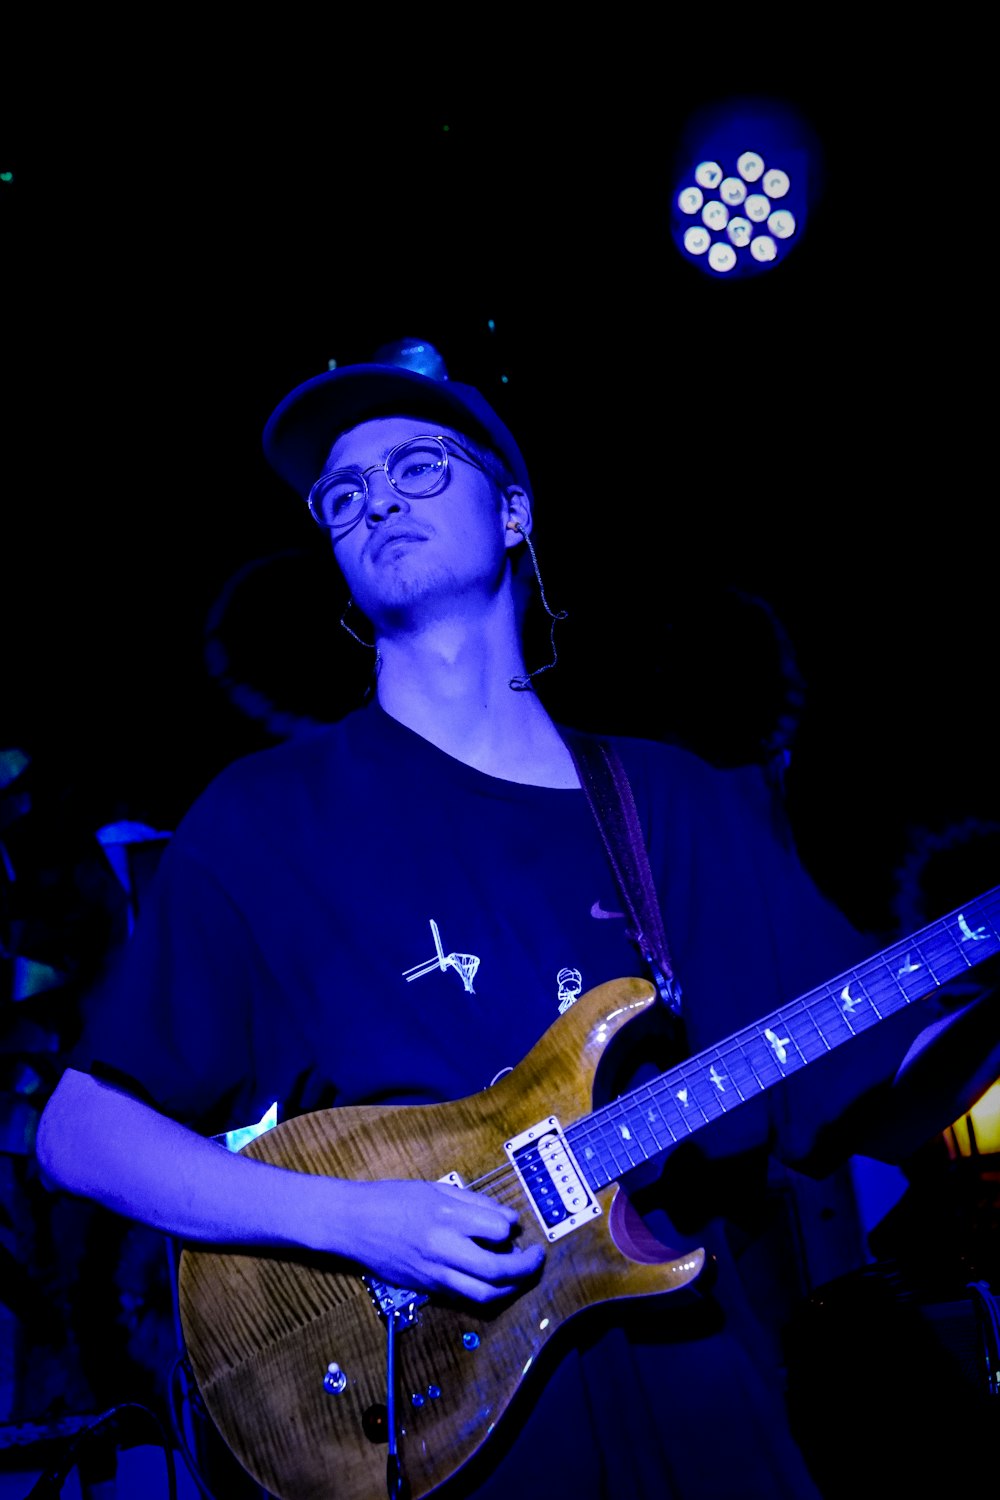 un homme avec un chapeau et des lunettes jouant de la guitare